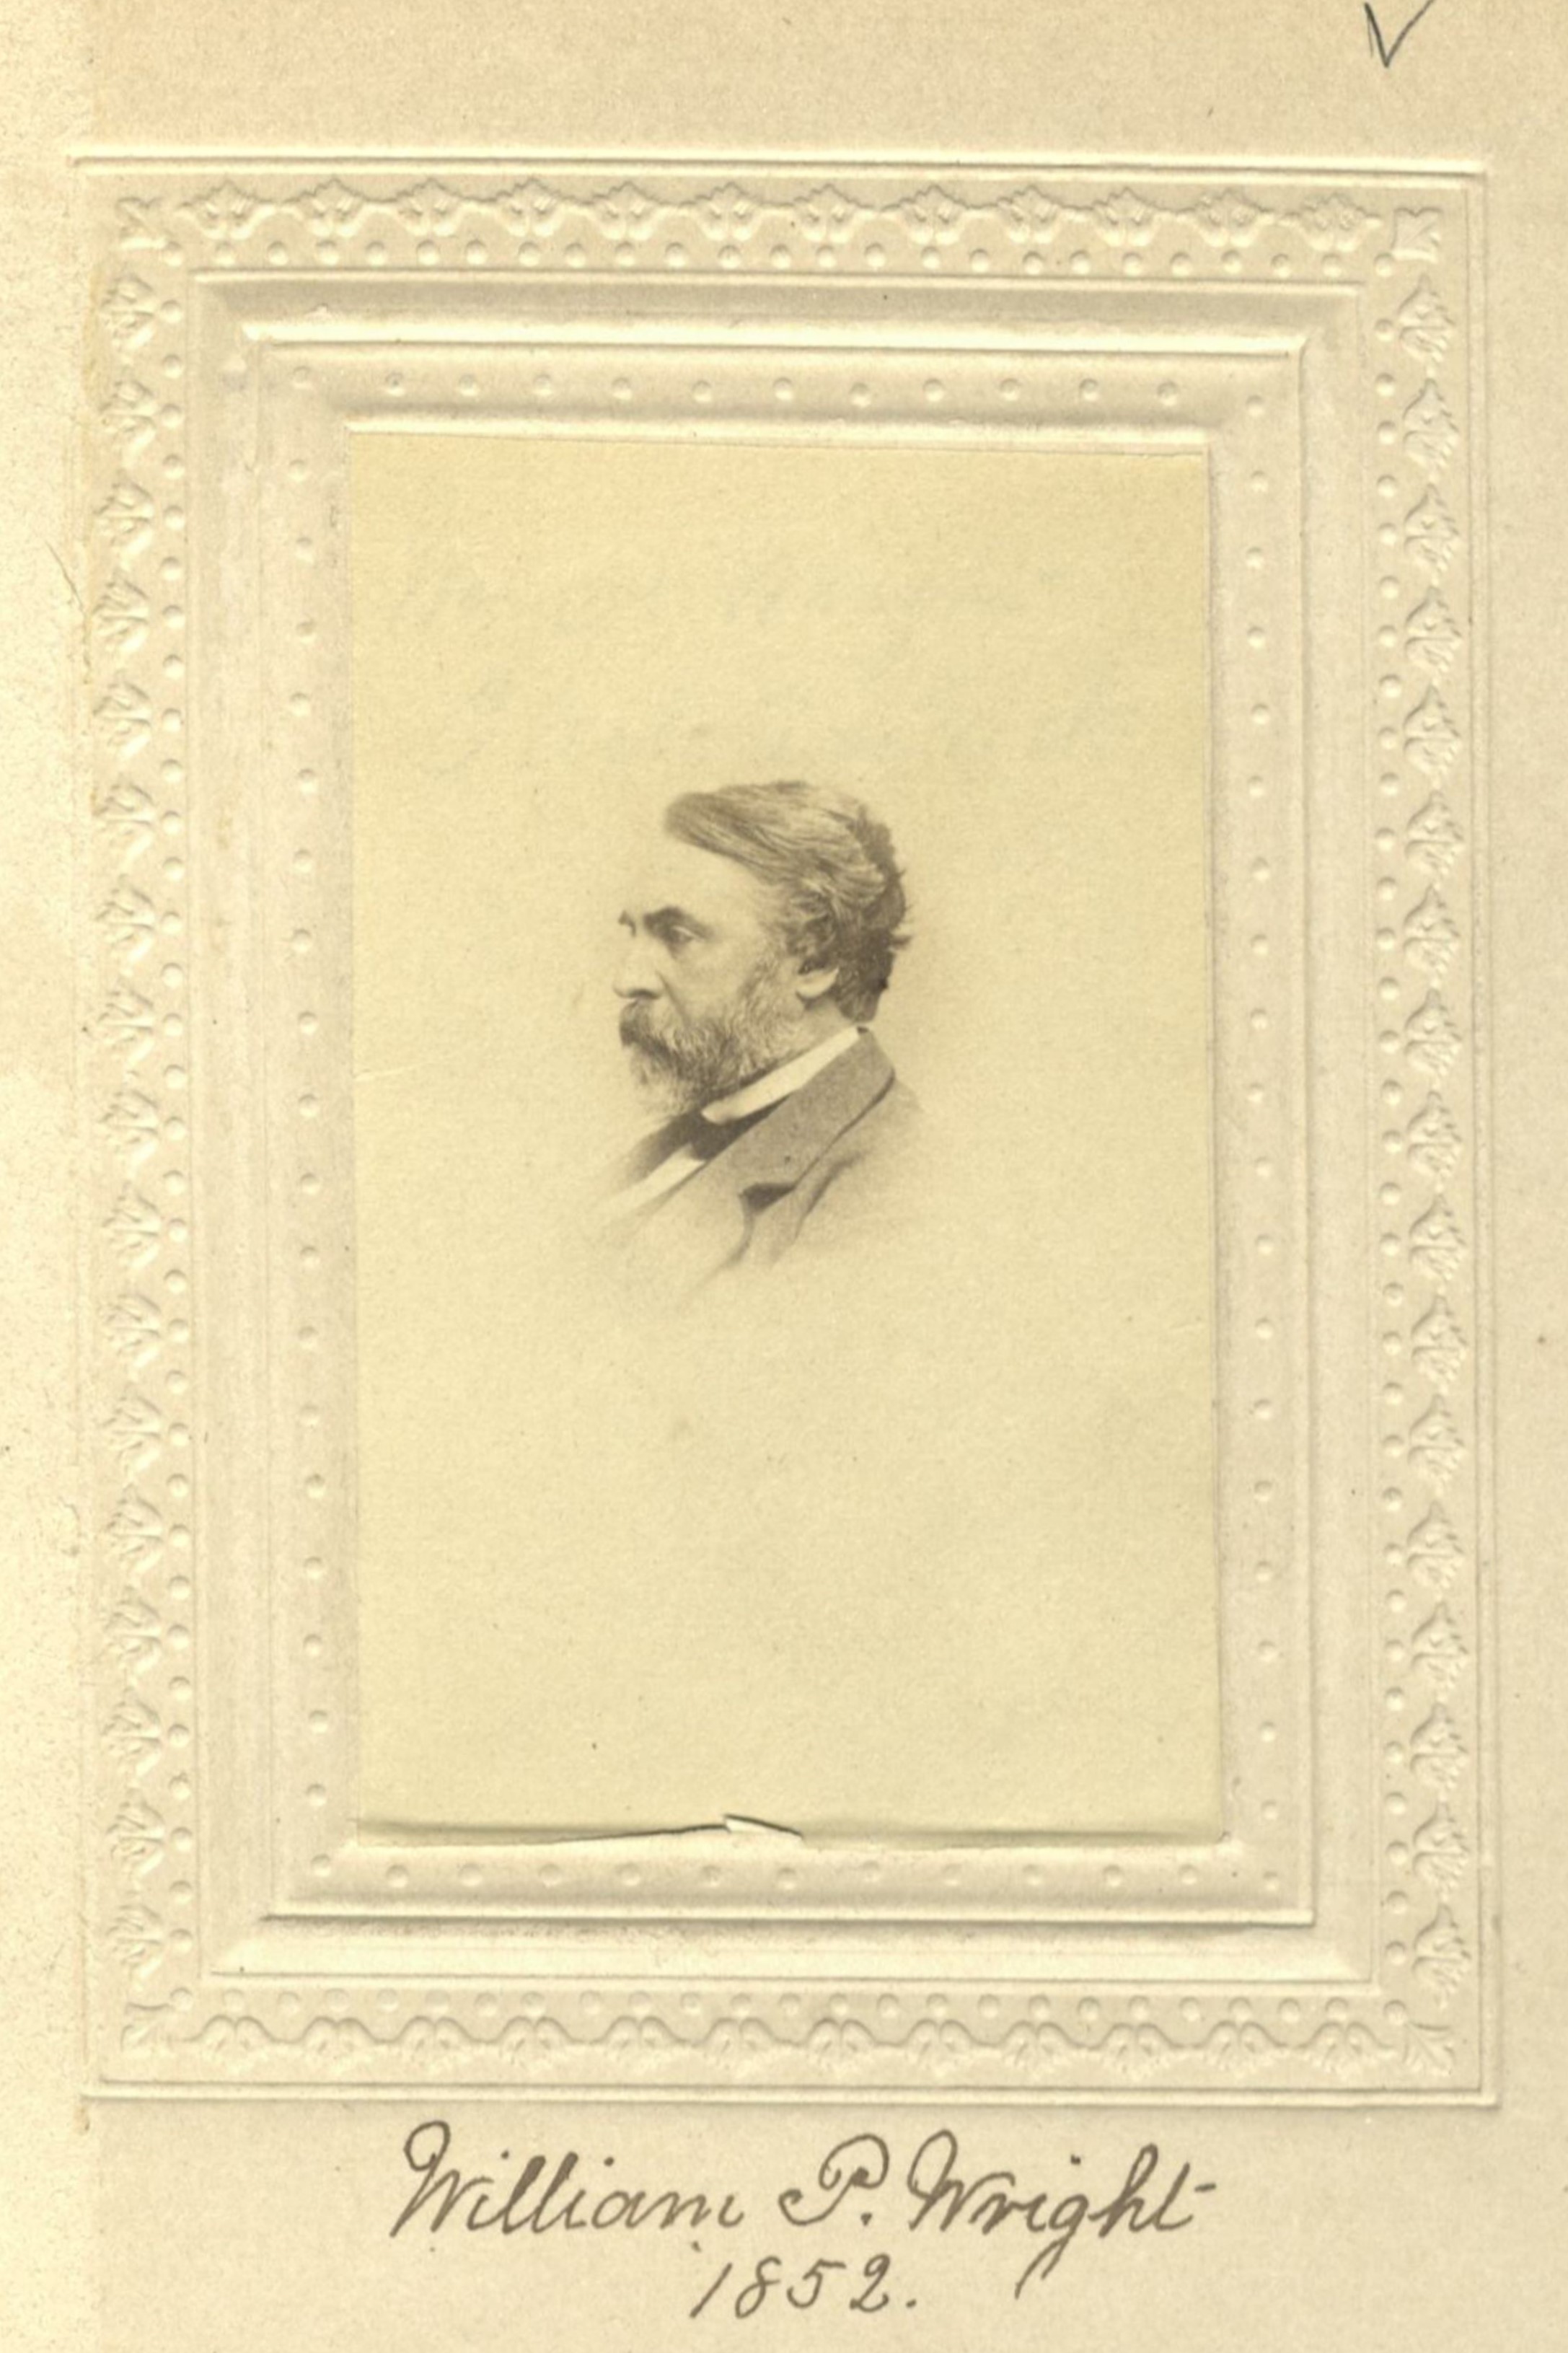 Member portrait of William P. Wright